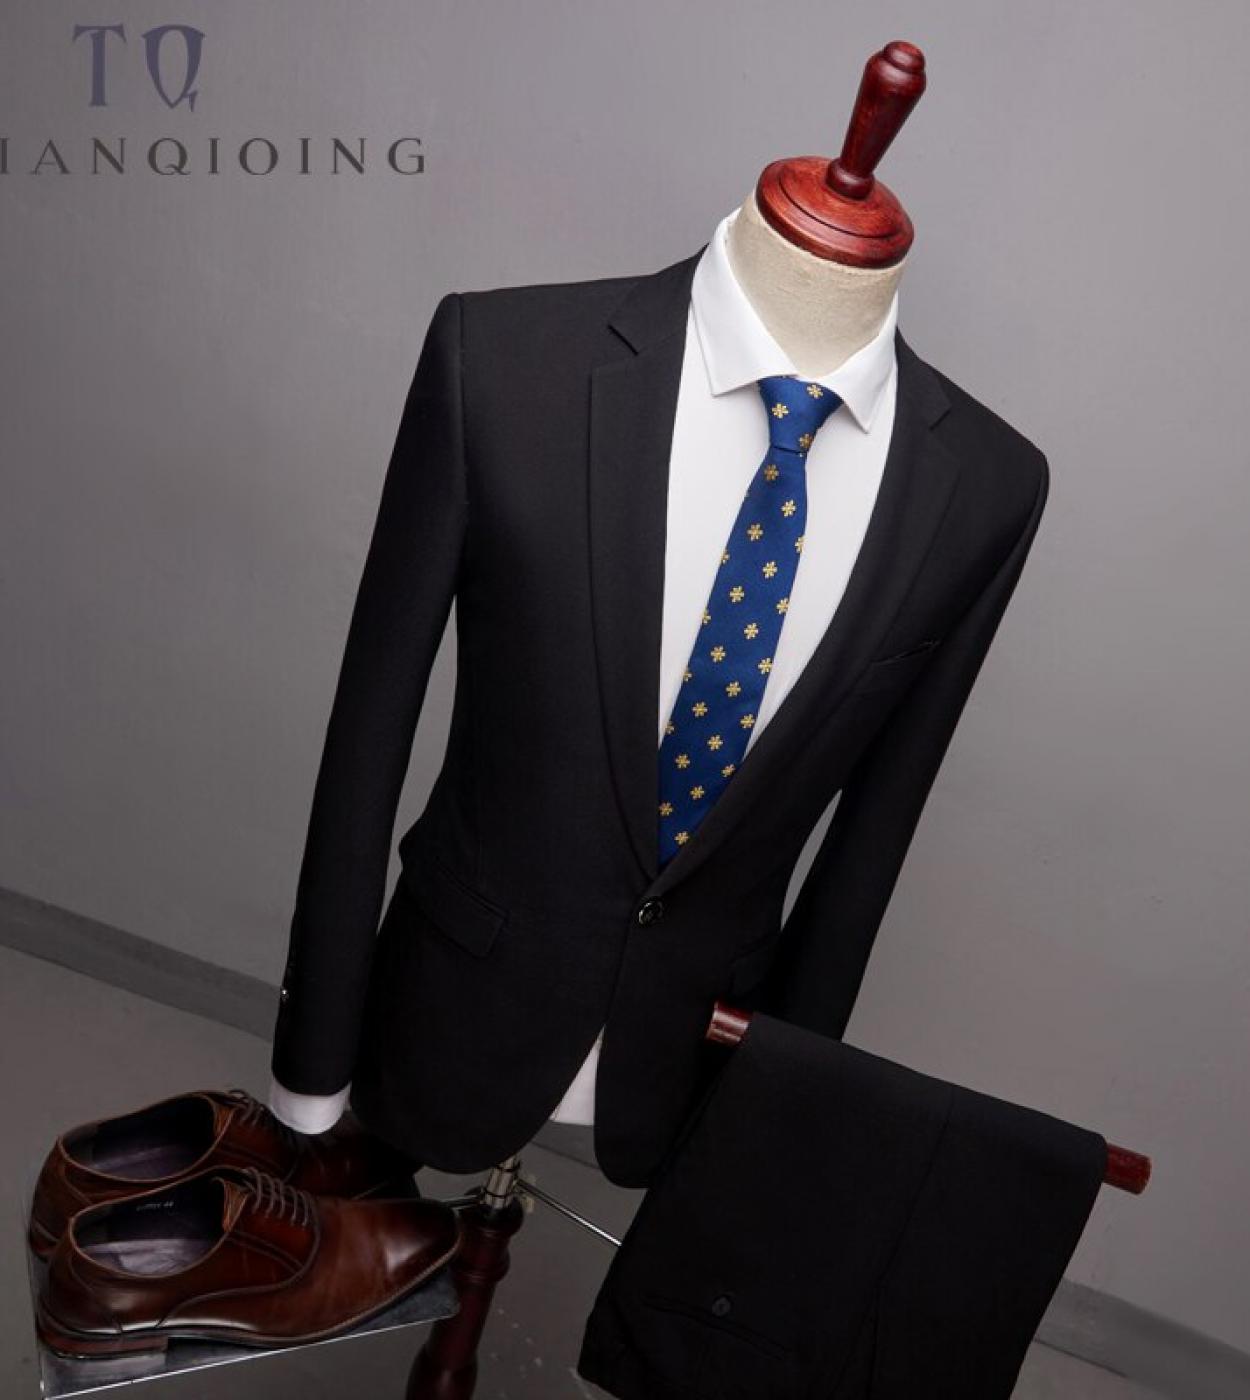 Blazerspants 2pcs Slim Fit Suits Men Notch Lapel Business Wedding Groom Leisure Tuxedo  Latest Coat Pant Designs S 6xls